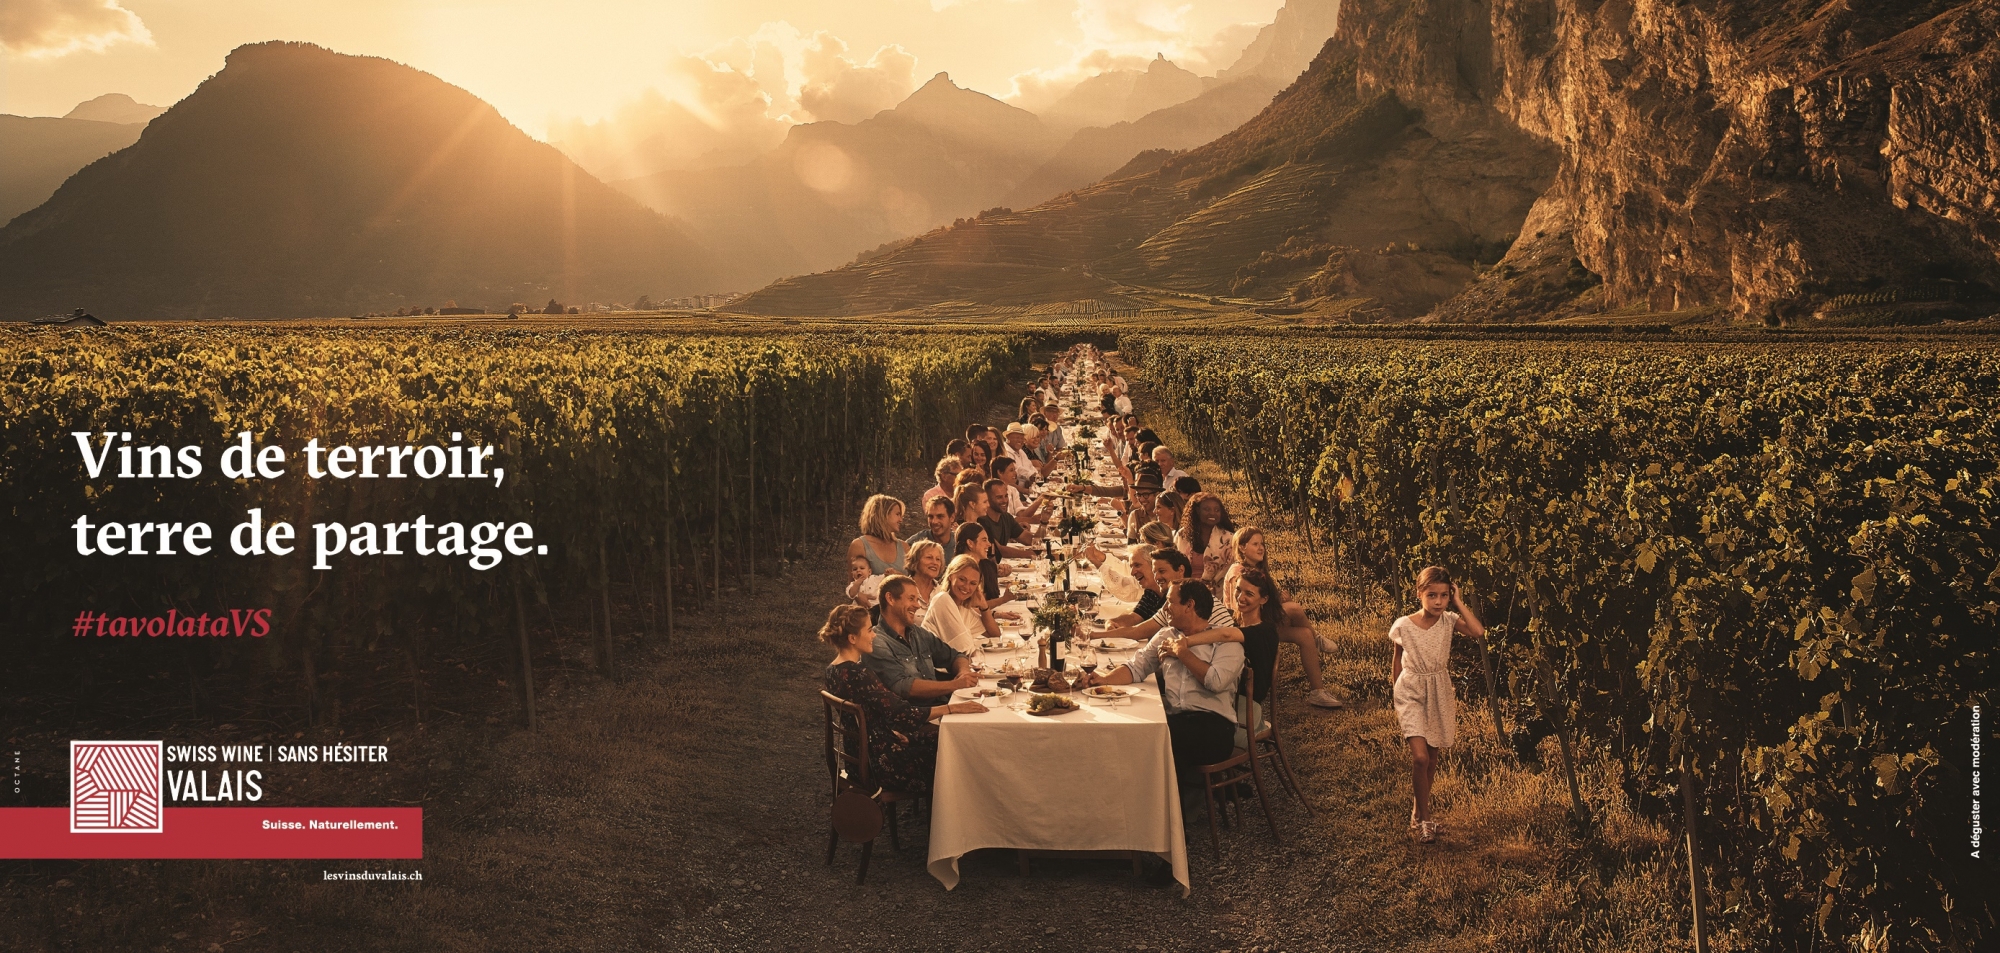 Avec cette nouvelle campagne de promotion et ce visuel original, les Vins du Valais misent sur le terroir, le partage d'émotions et la surprise pour titiller l'intérêt d'une nouvelle clientèle.